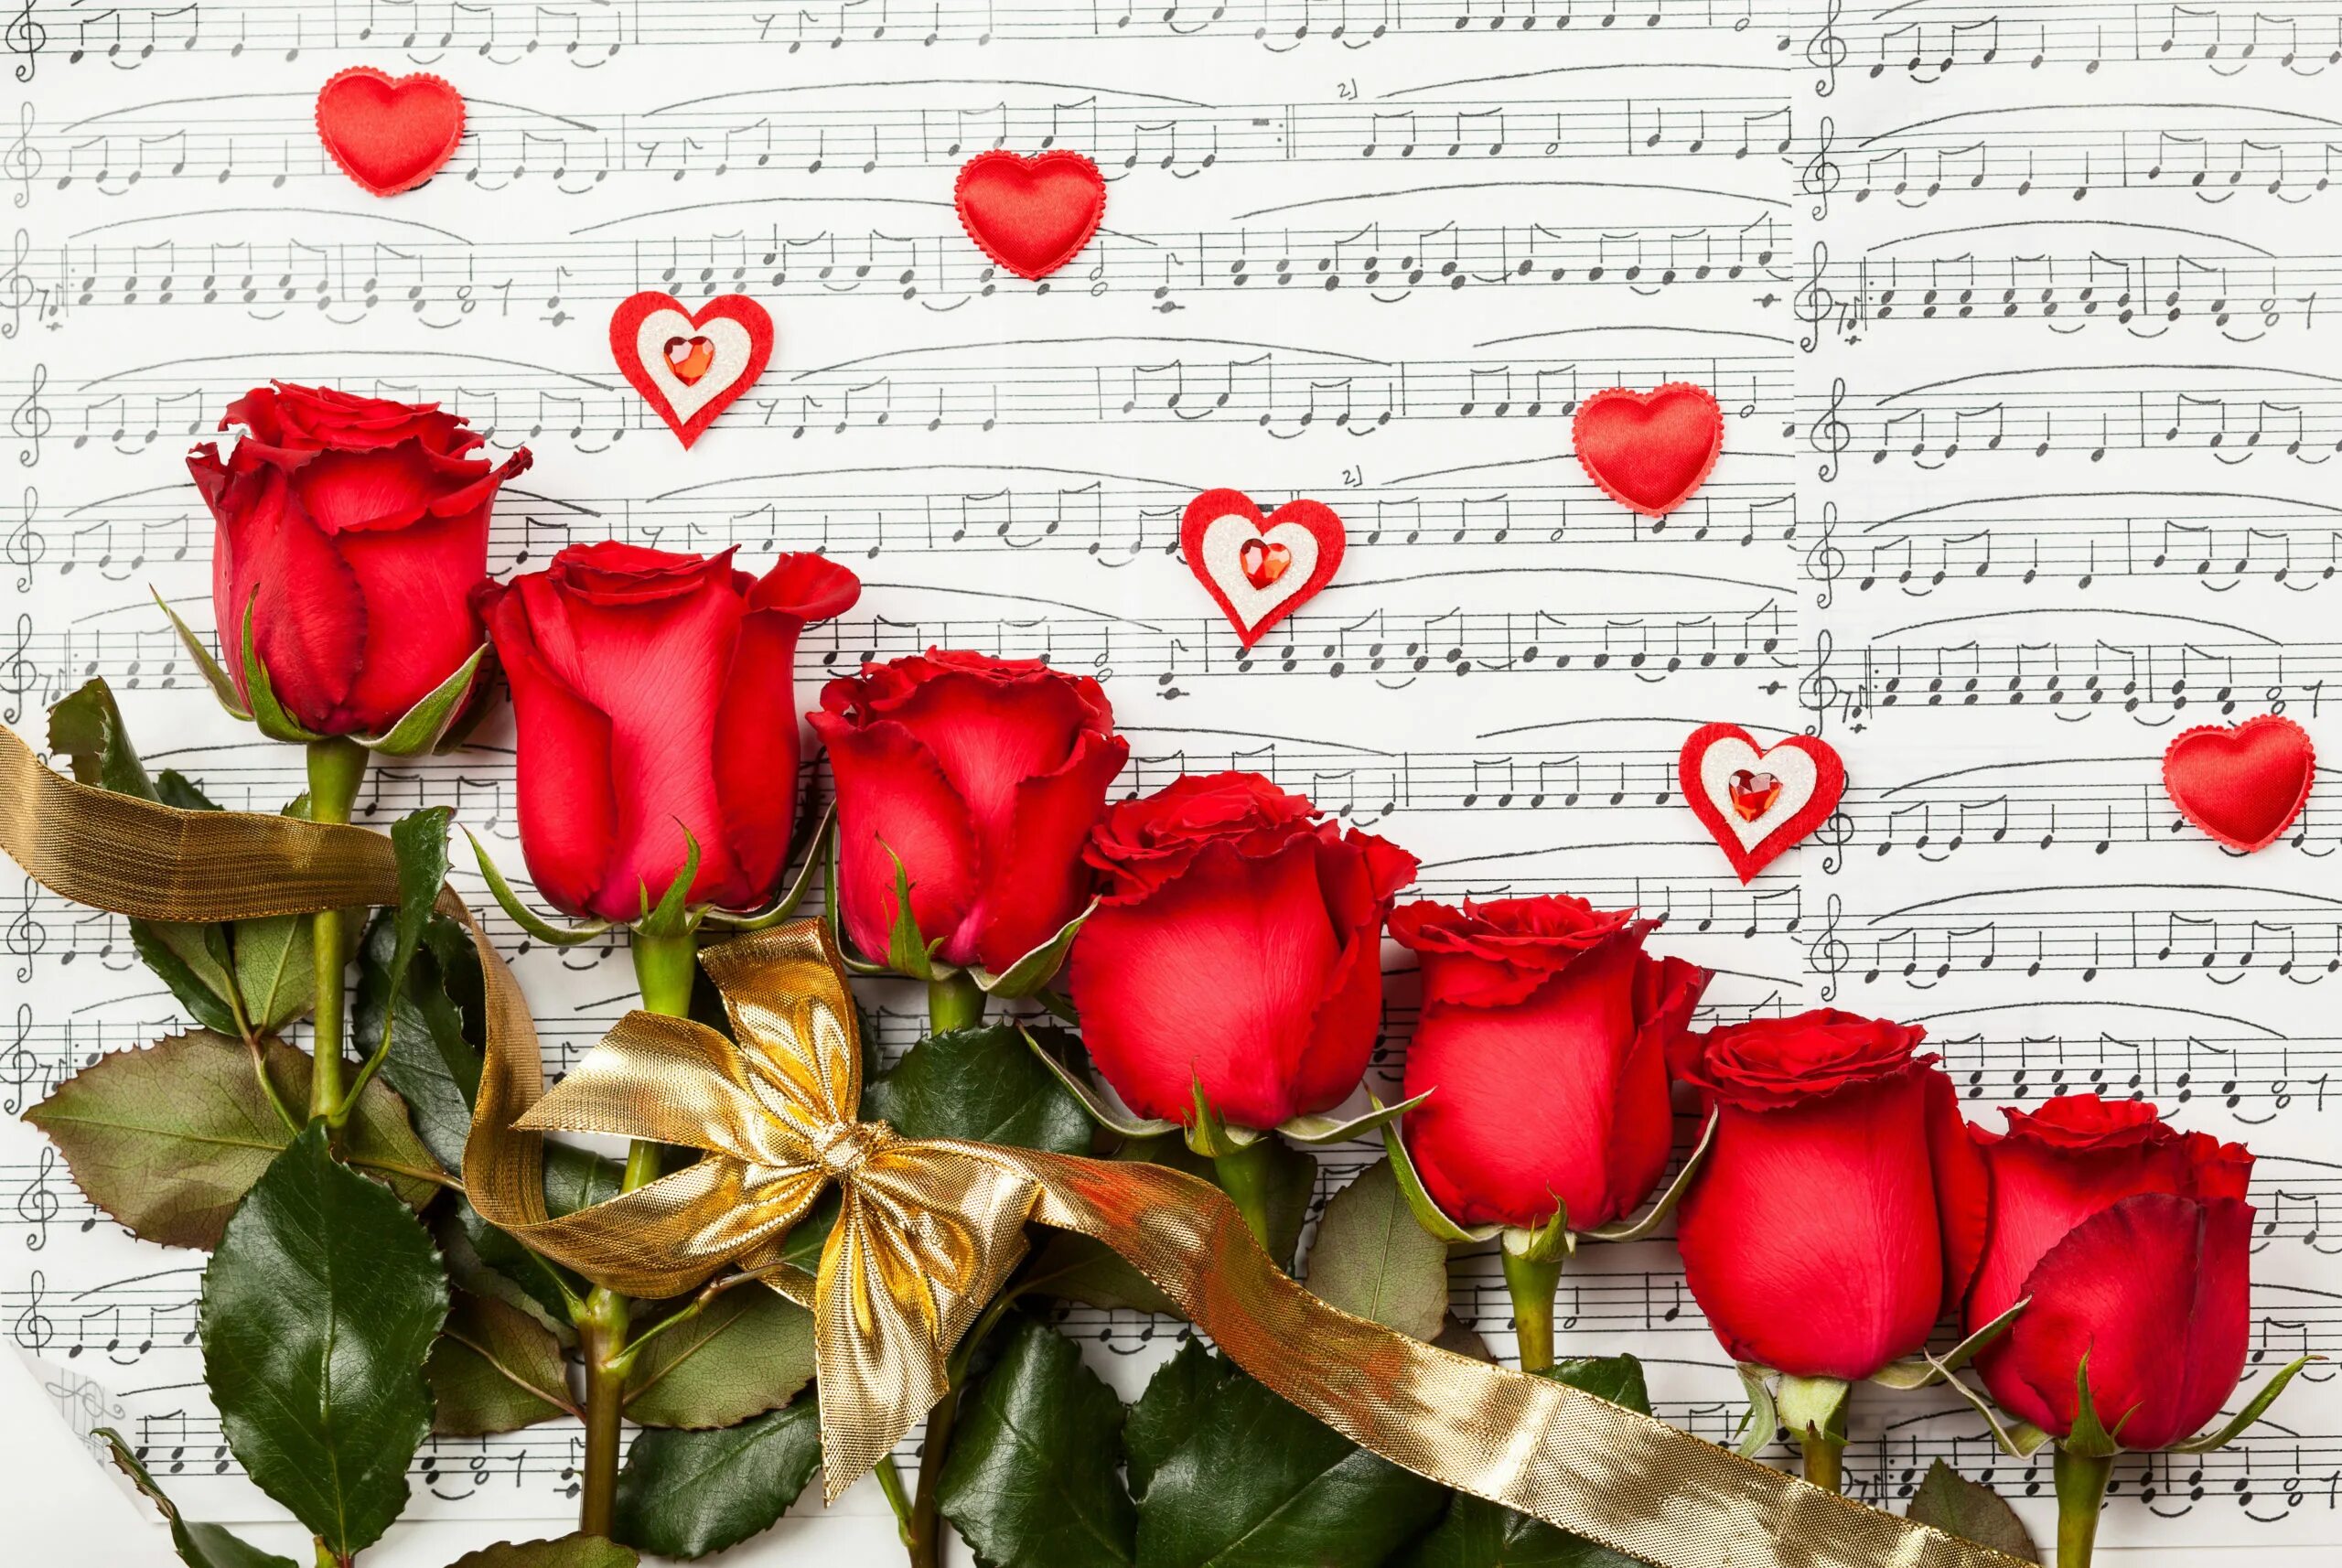 Звучали пожелания. Открытка музыканту. Музыкальная картинка с днем рождения. Цветы для любимой. Ноты и цветы.